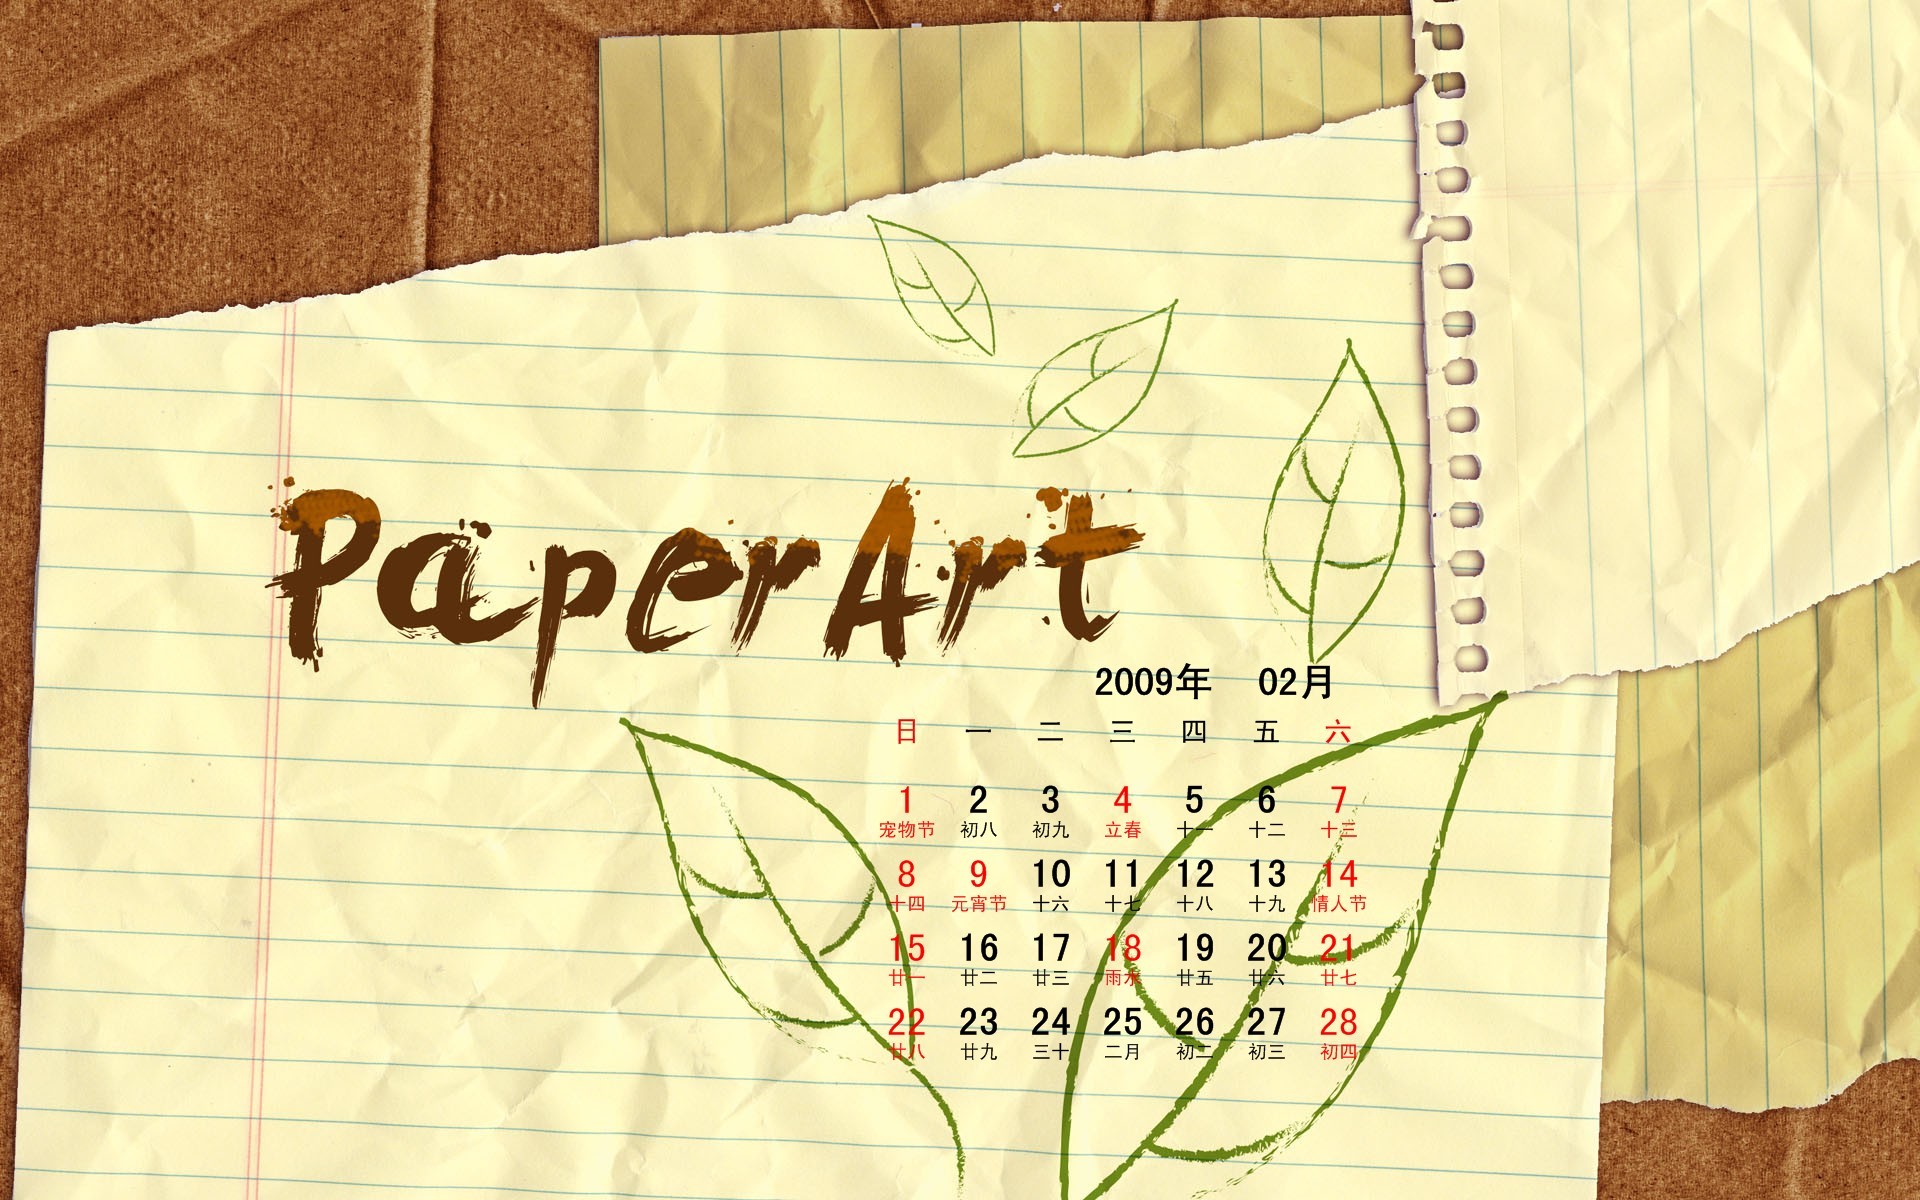 PaperArt 09 años en el fondo de pantalla de calendario febrero #27 - 1920x1200